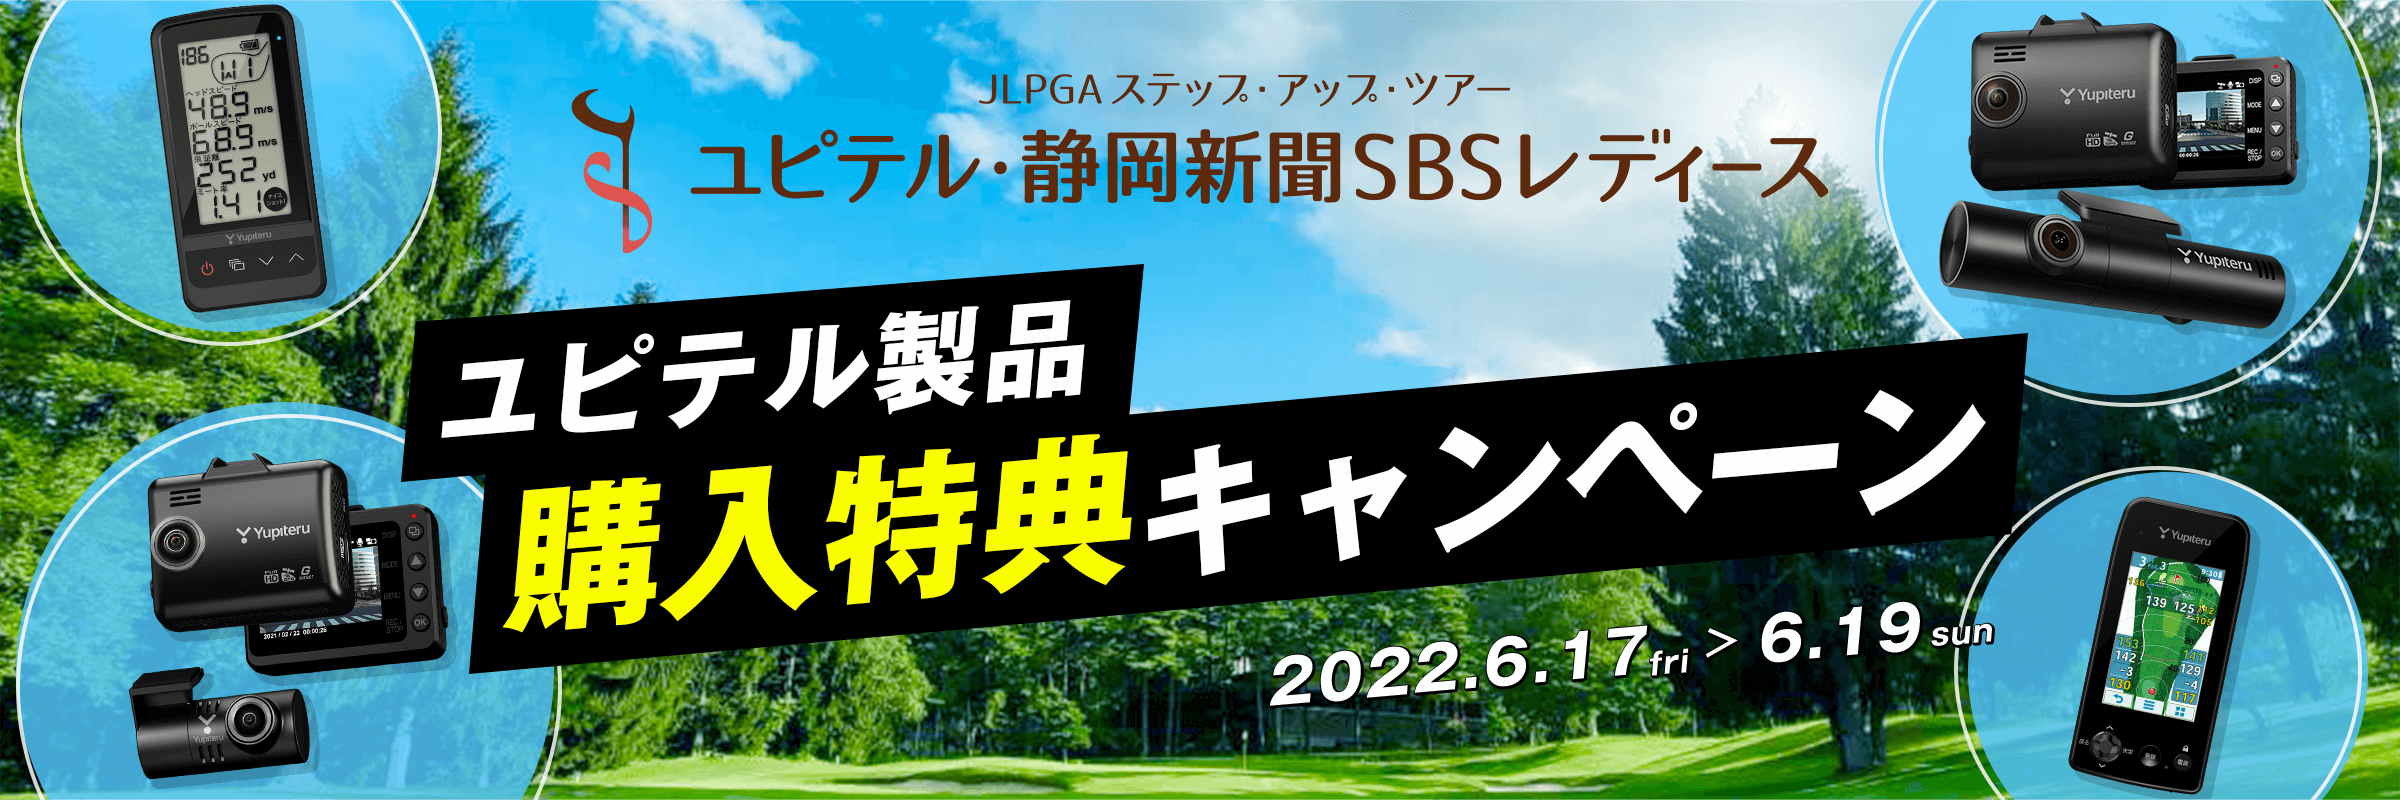 ユピテル・静岡新聞SBSレディース開催期間限定 ユピテル製品購入特典キャンペーン